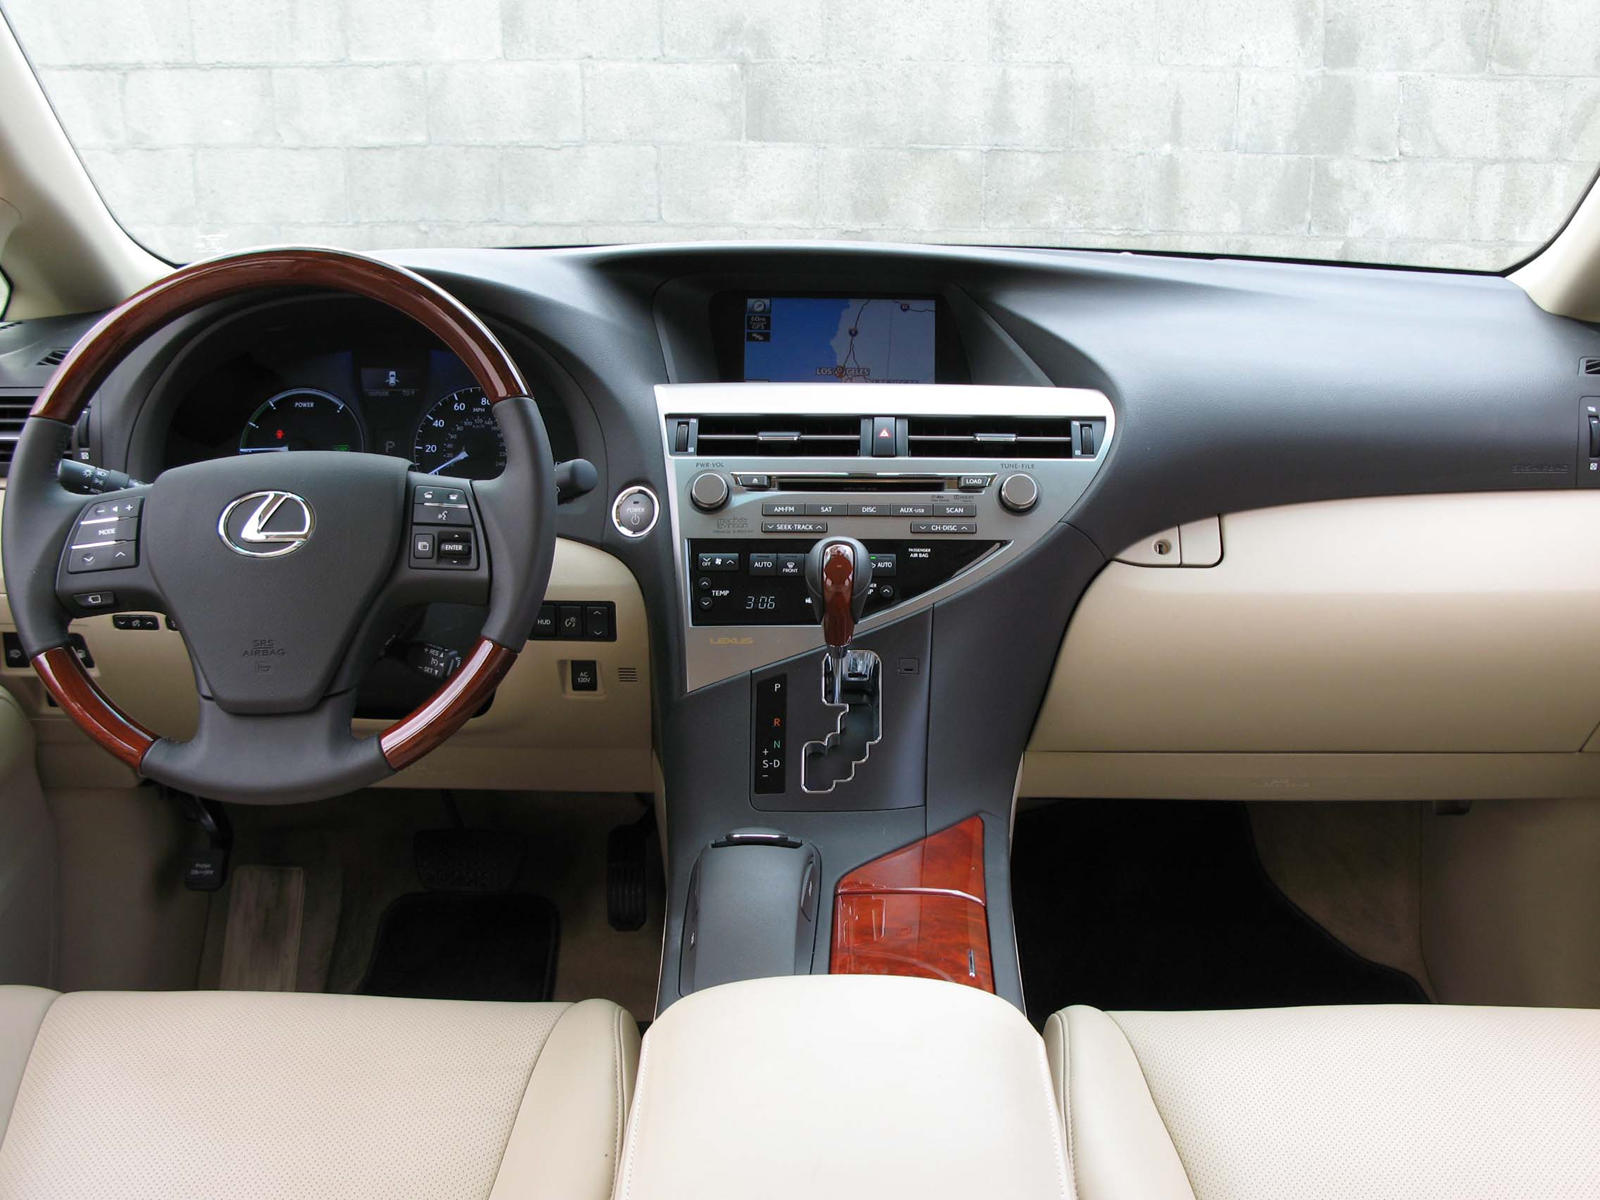 2010 Lexus RX Hybrid Dashboard